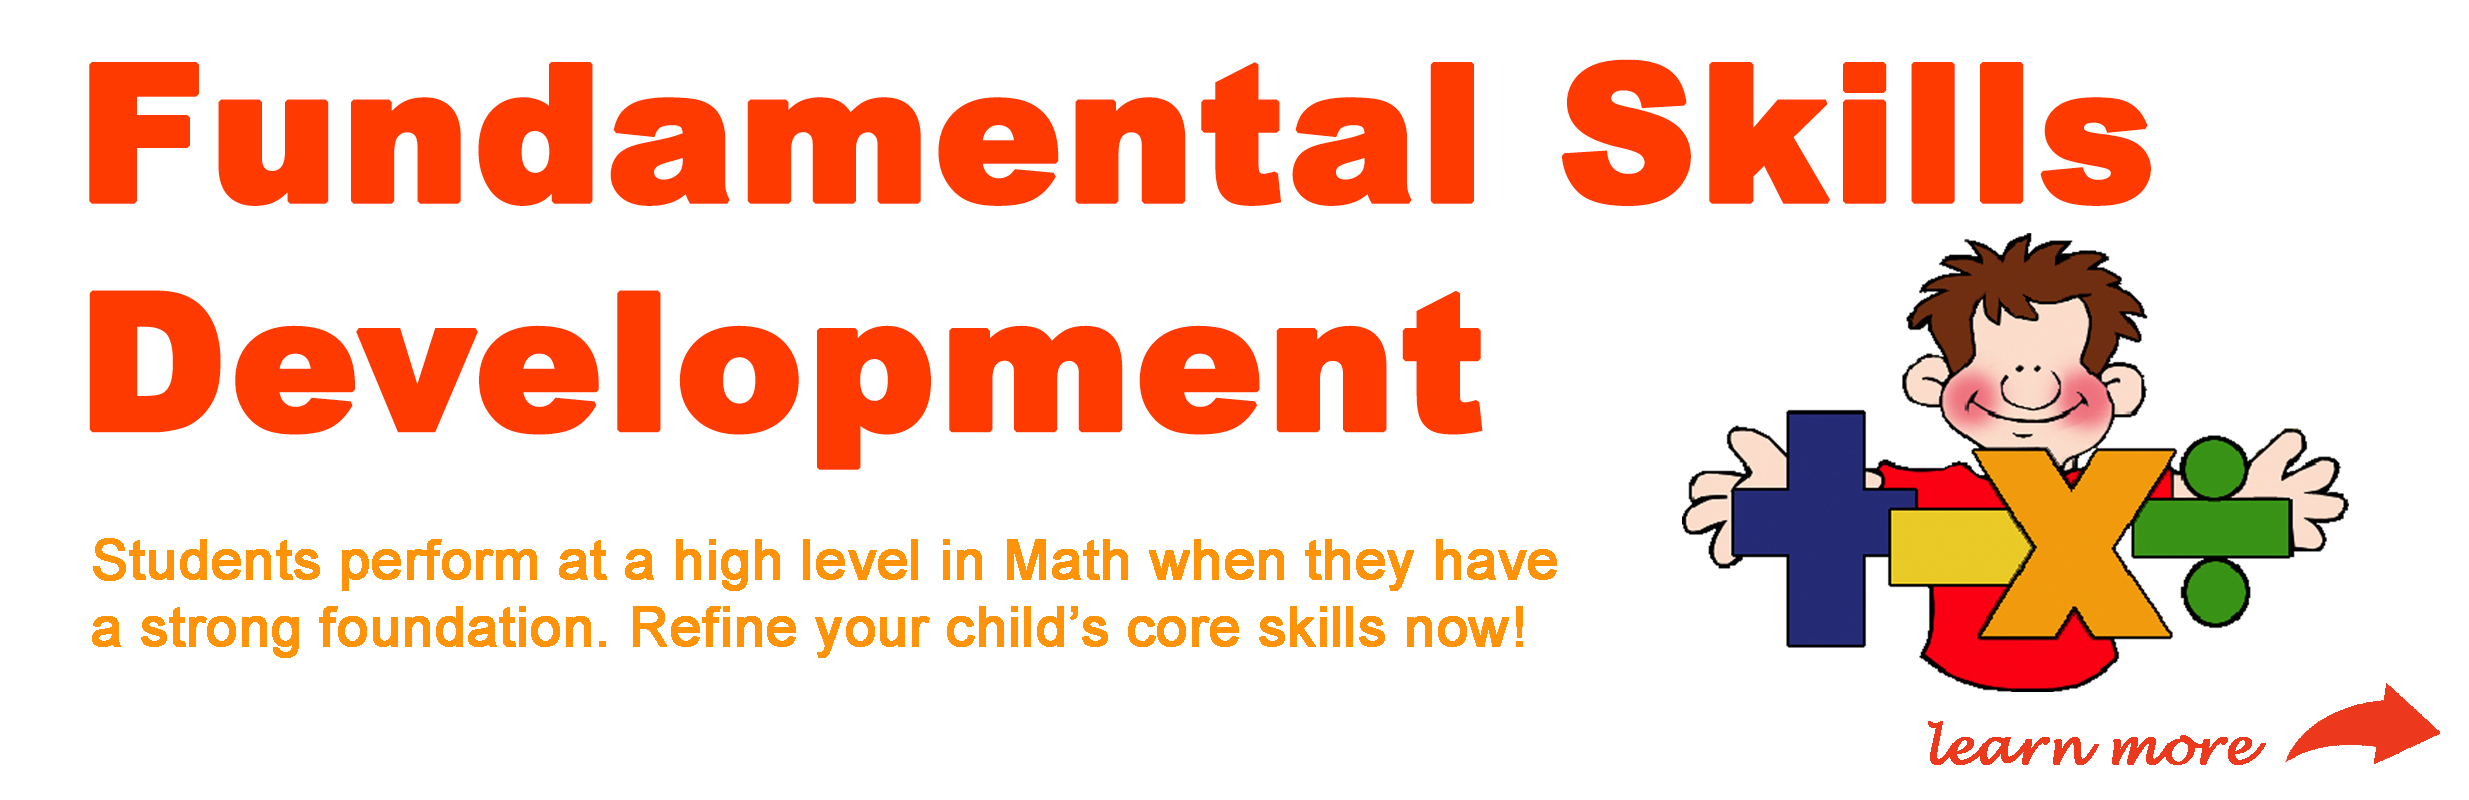 Fundamental Skills Development